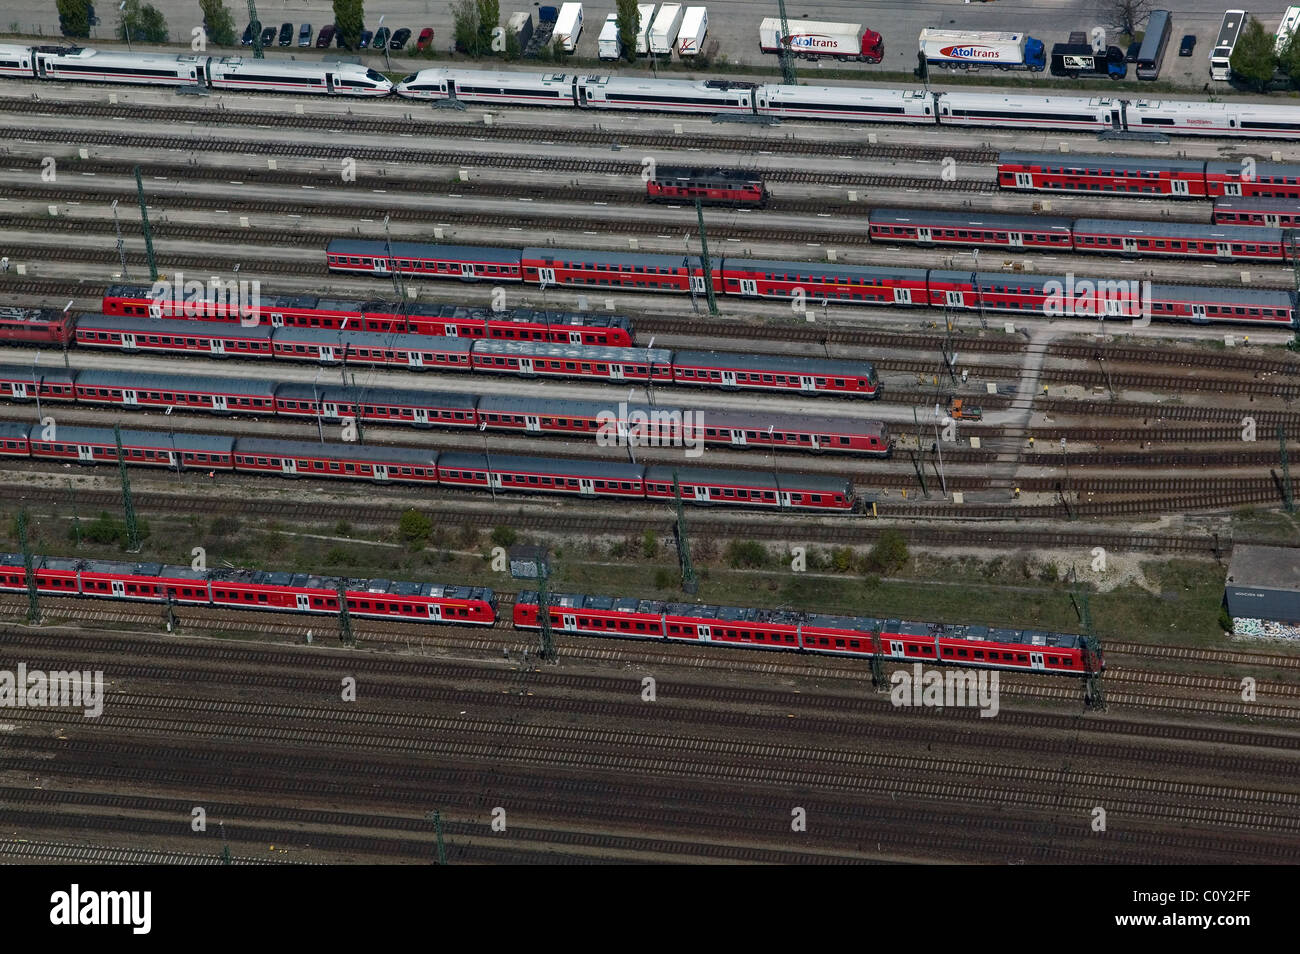 Vista aérea por encima de Deutsche Bundesbahn vagones de ferrocarril en la estación central de tren de Múnich München Hauptbahnhof Alemania Foto de stock